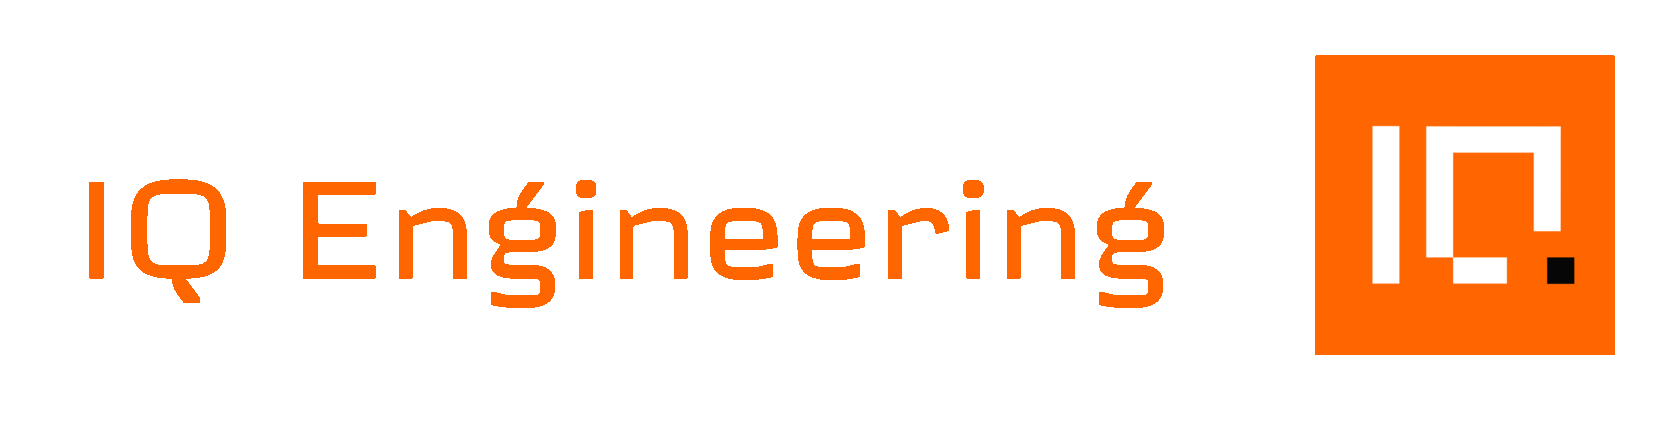 IQ Premium Engineering Ltd